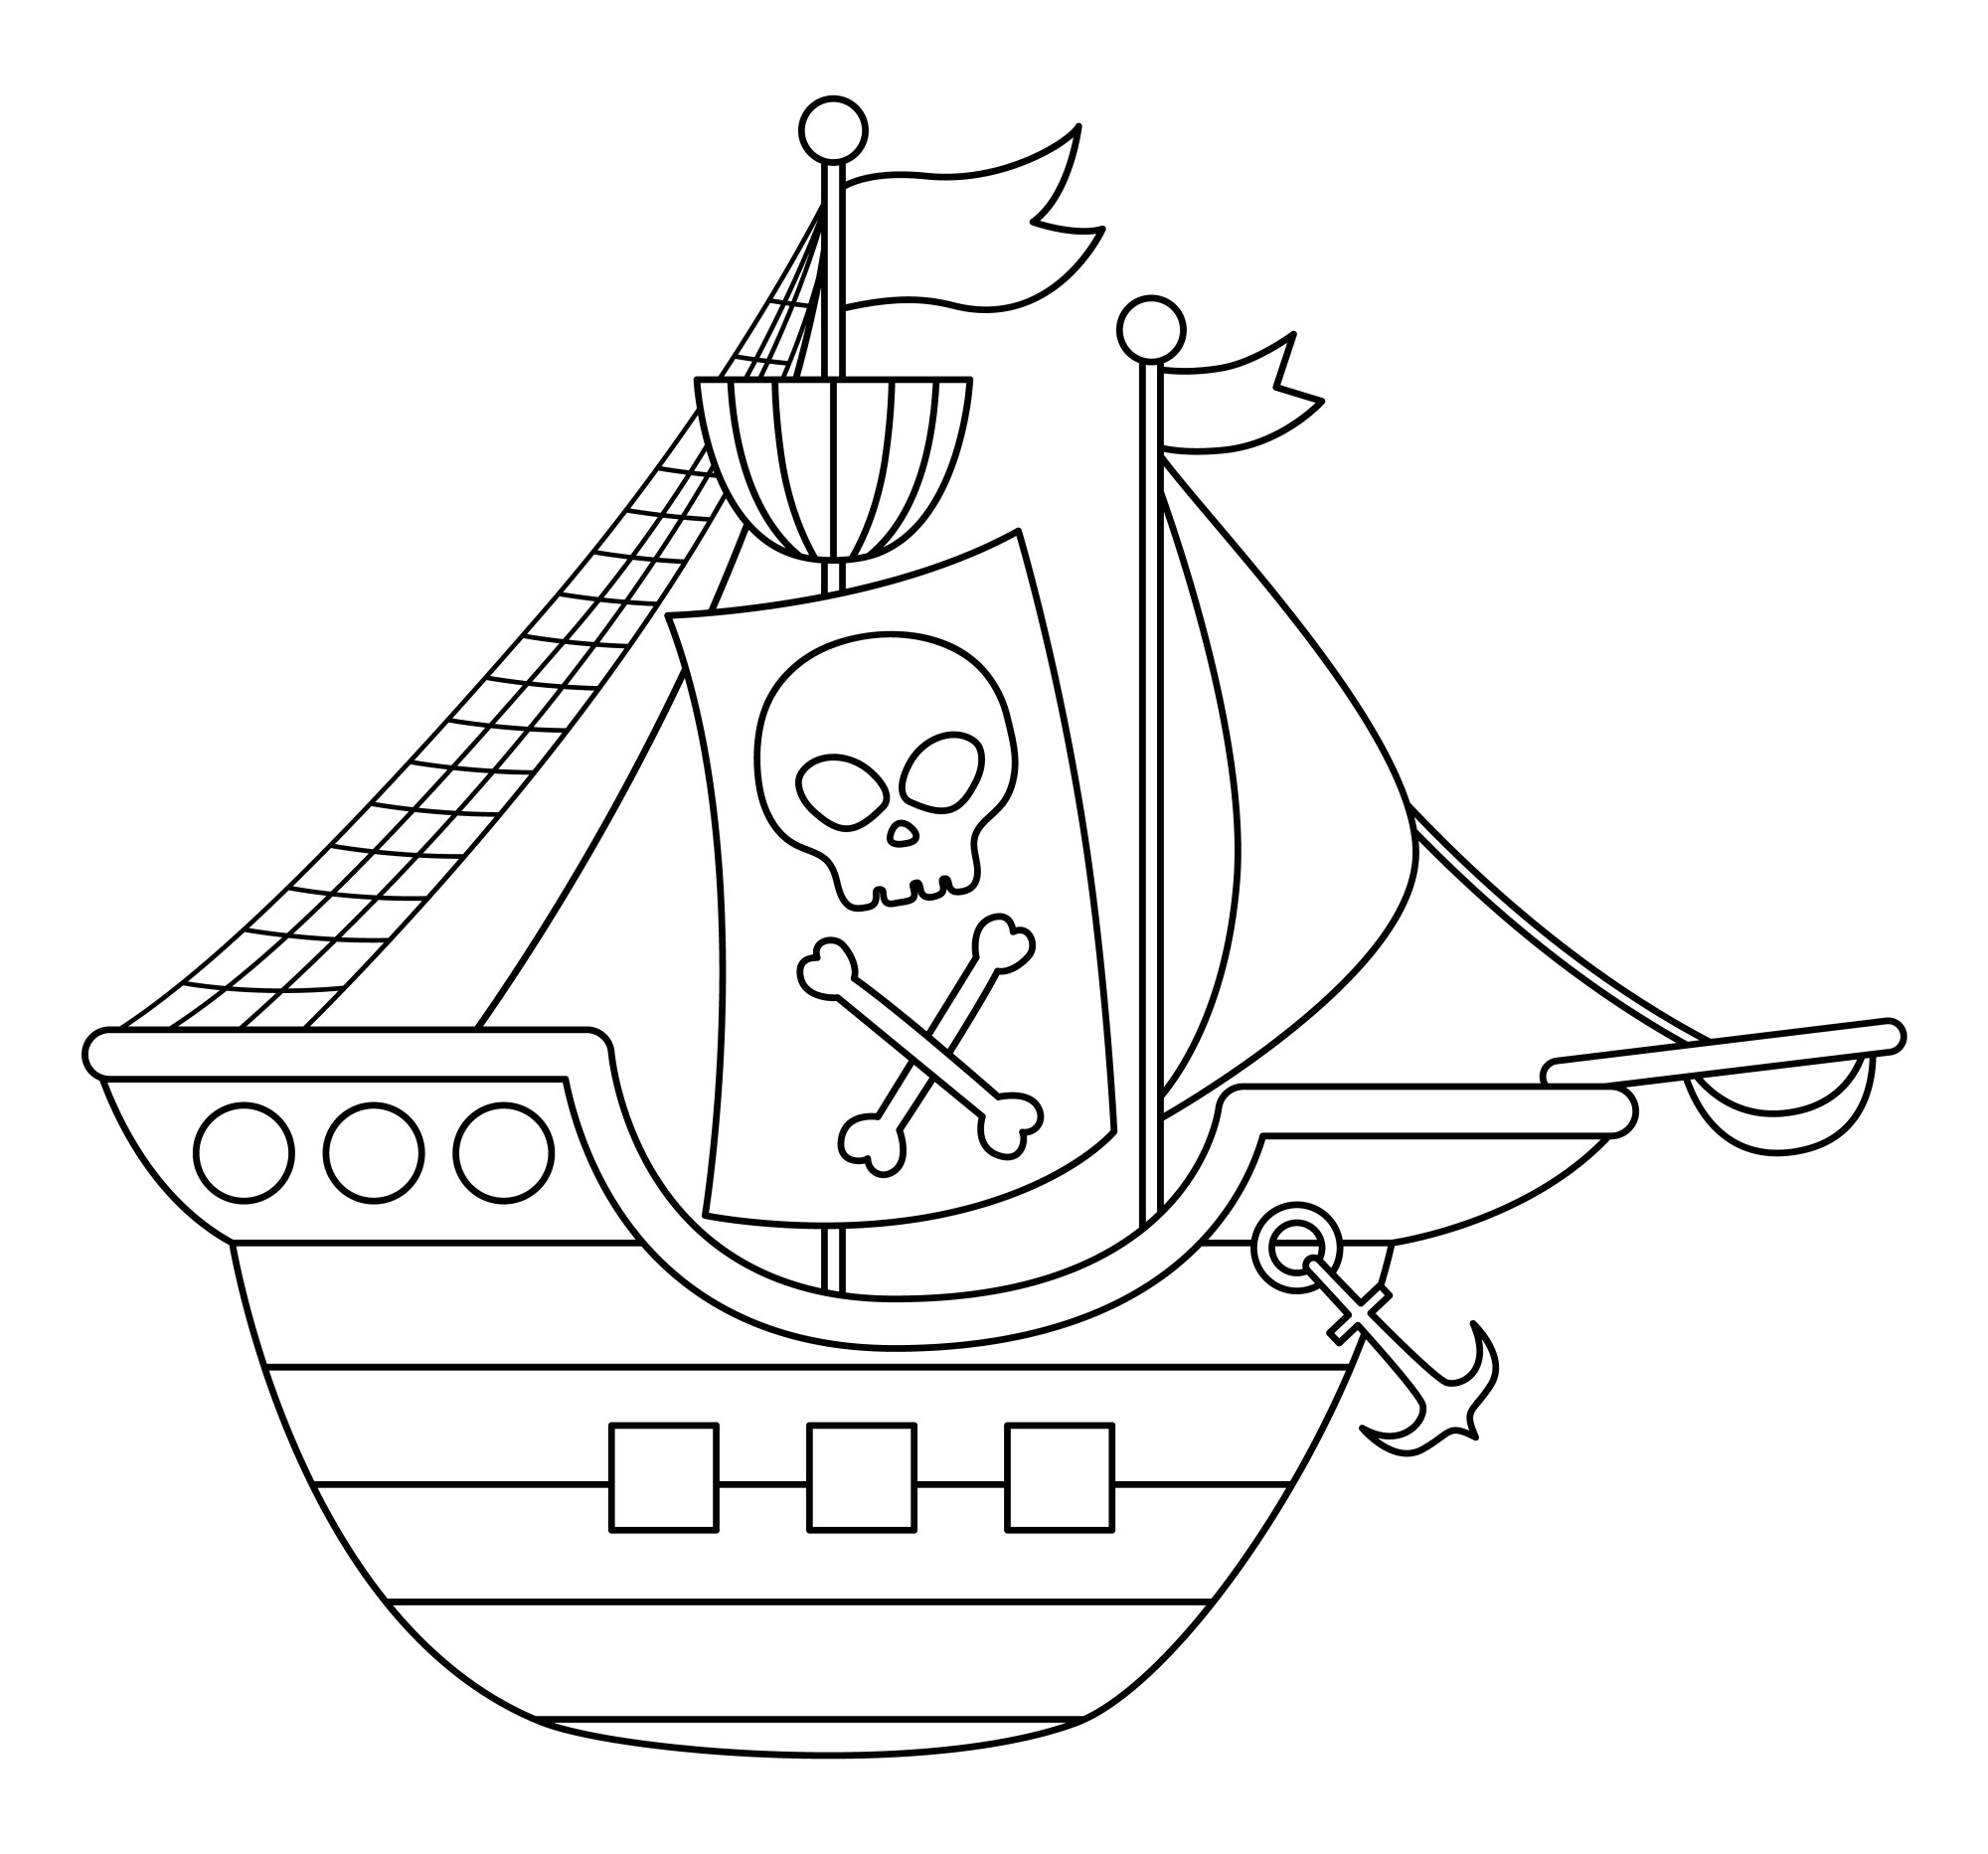 Раскраска для детей: пиратское судно с якорем и флагом